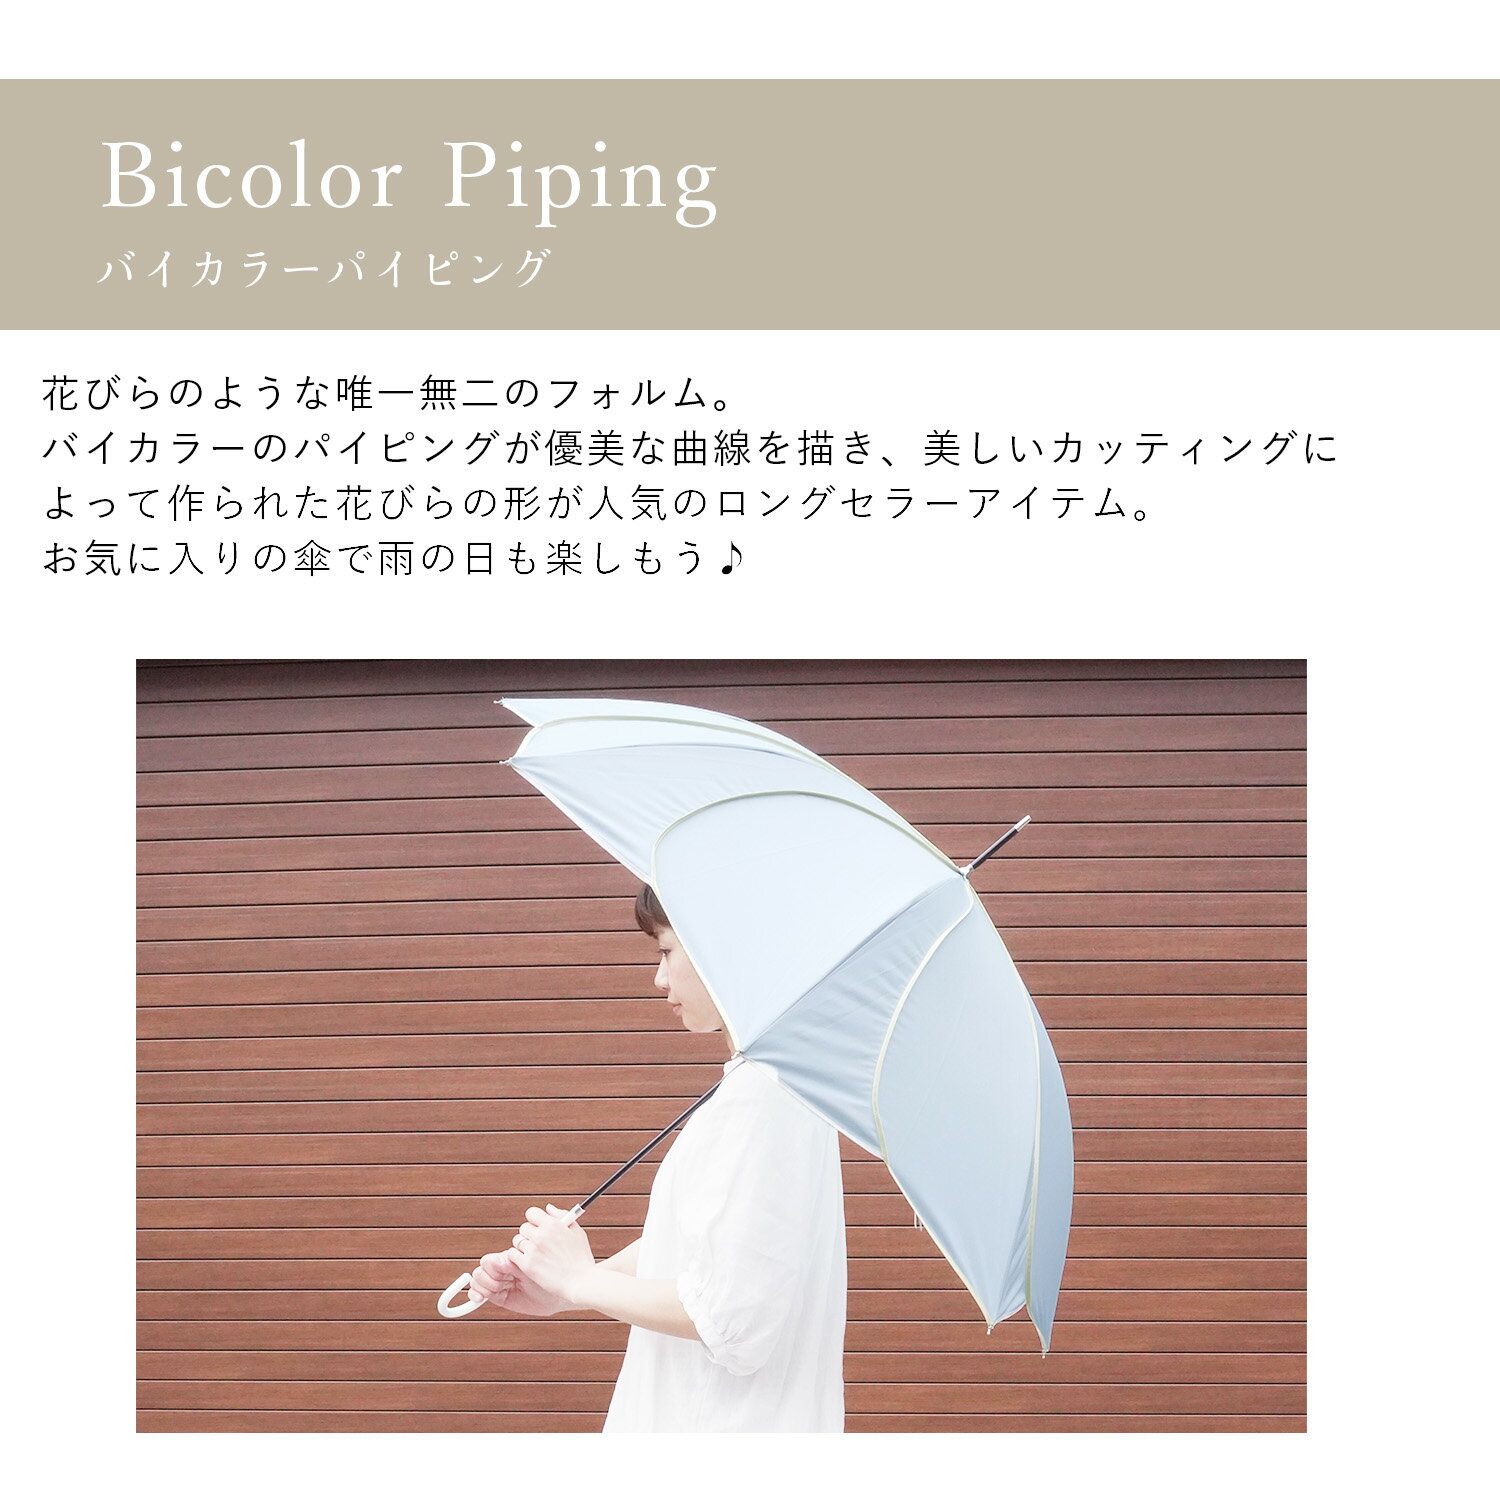 【人気商品】花びら 傘 バイカラーパイピング ...の紹介画像2